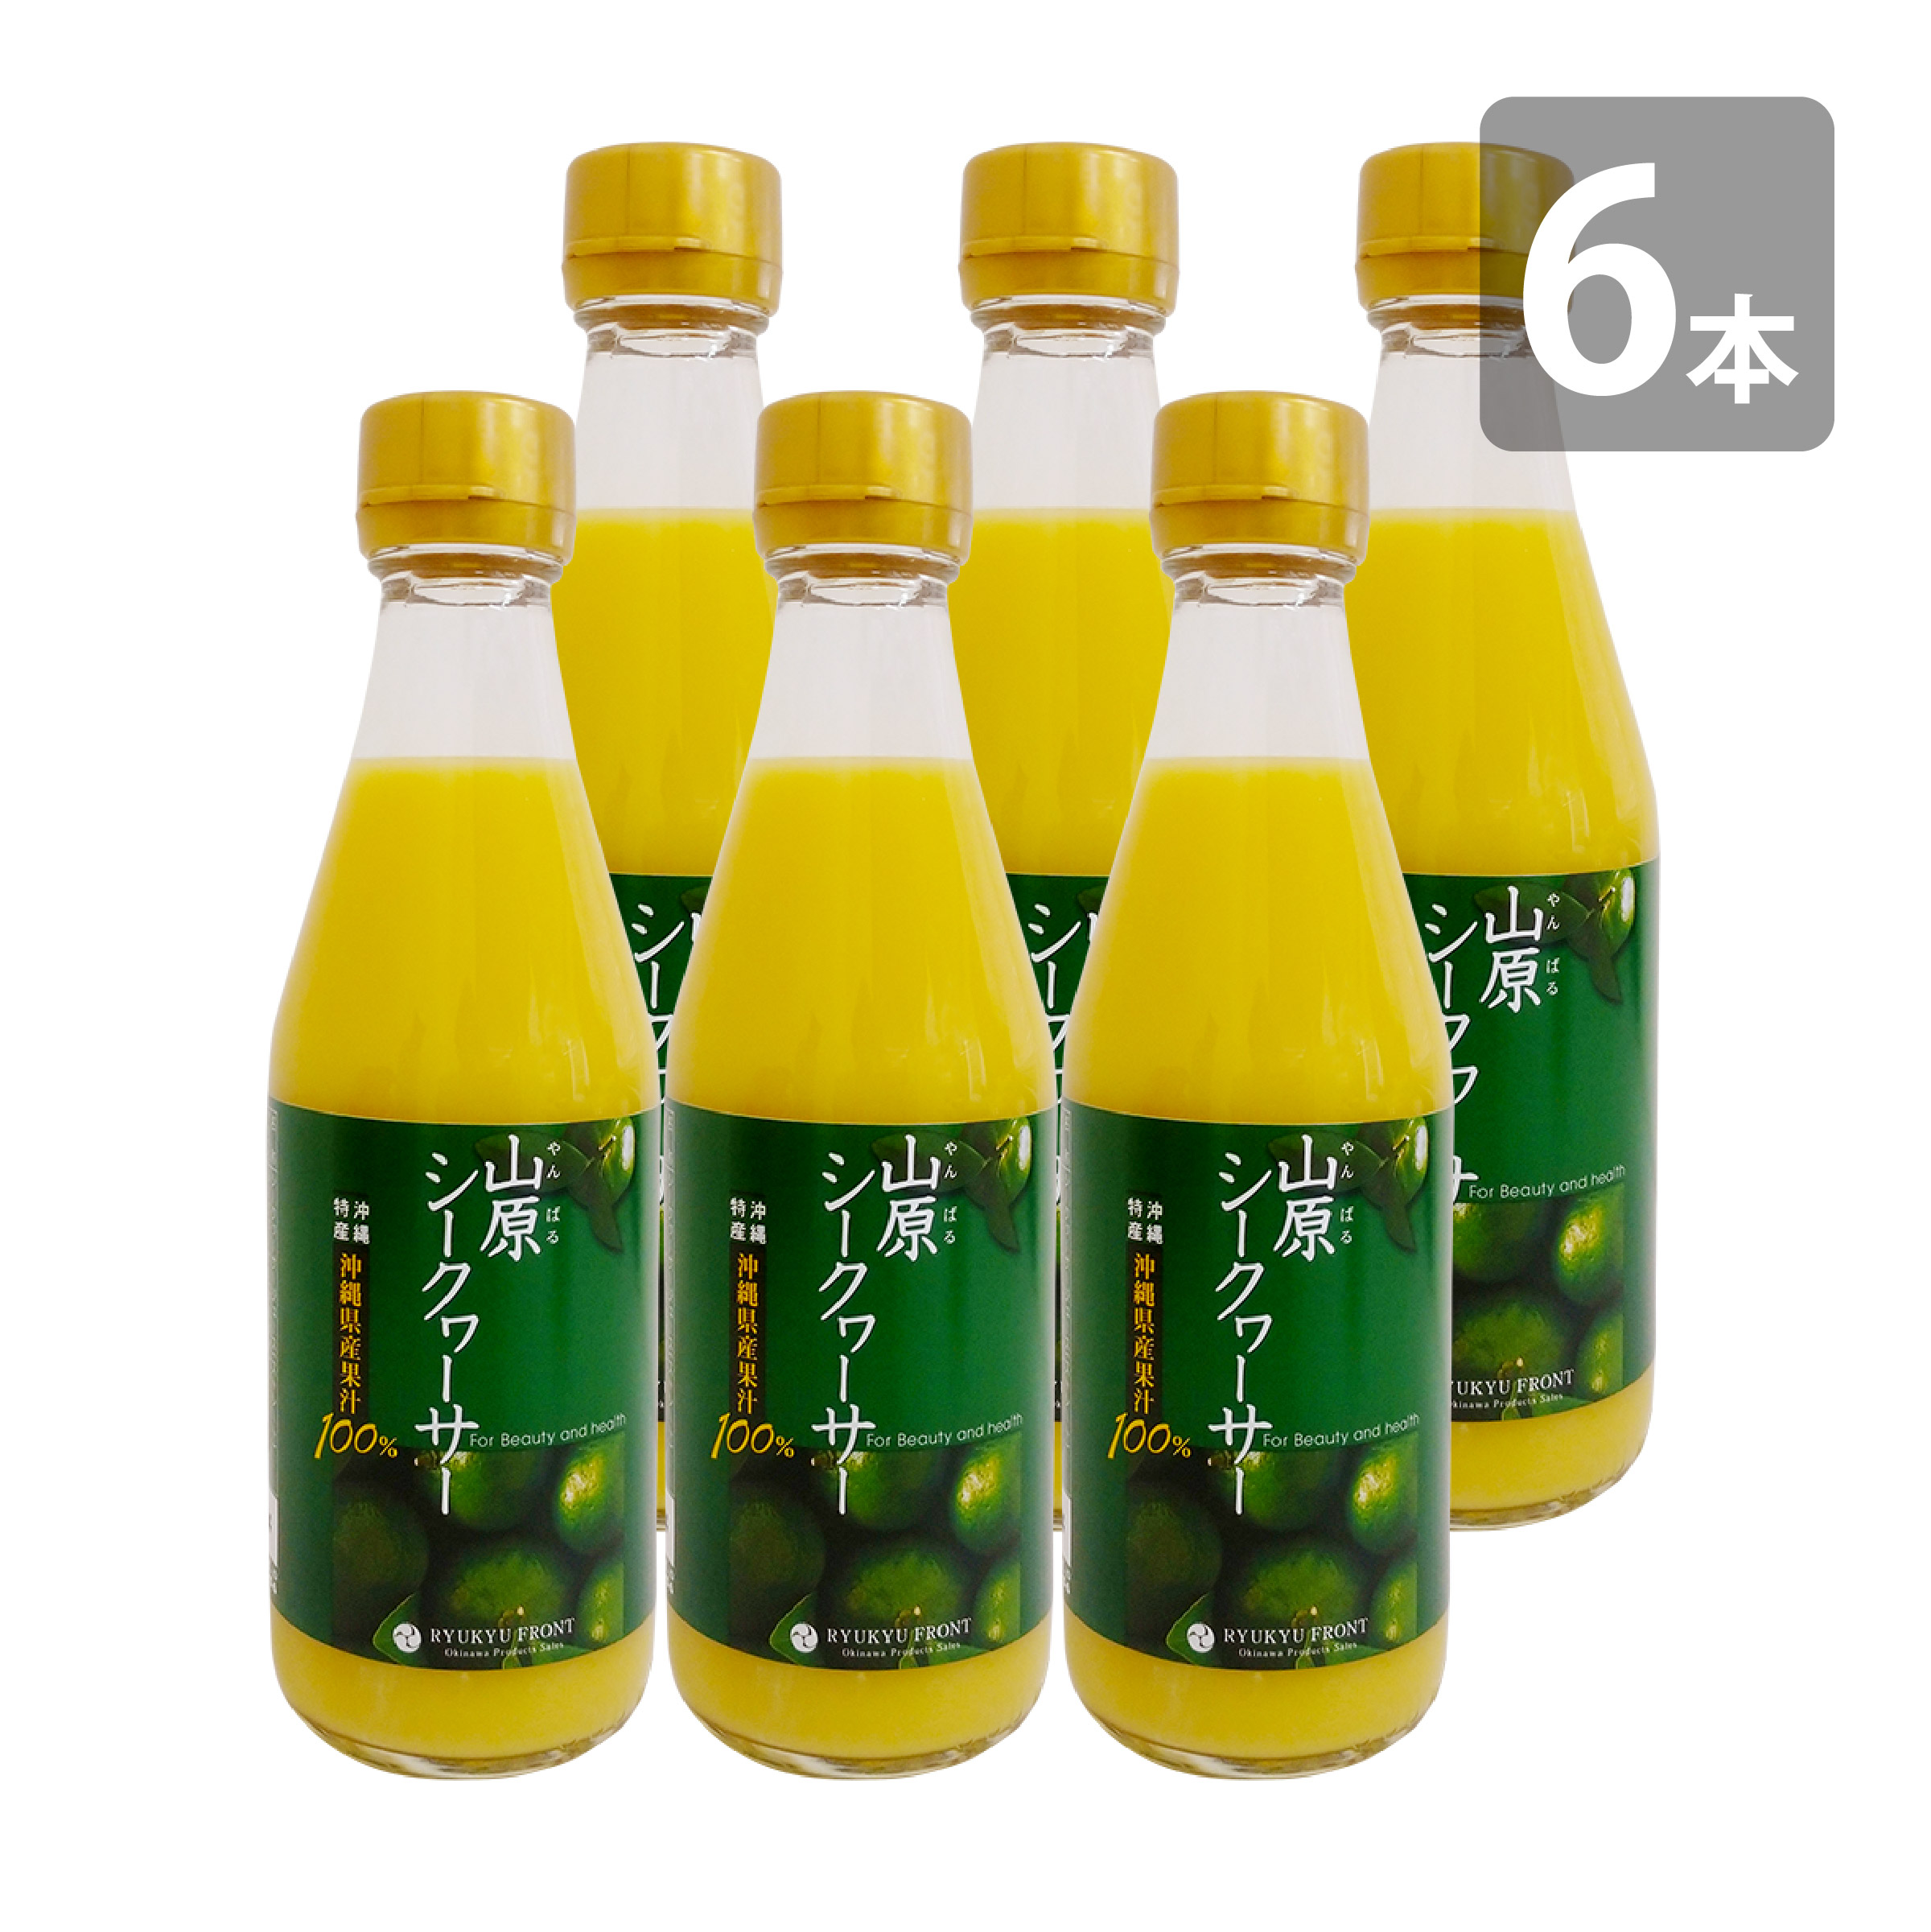 琉球フロント 山原シークヮーサー 瓶 300ml×6 フルーツジュースの商品画像